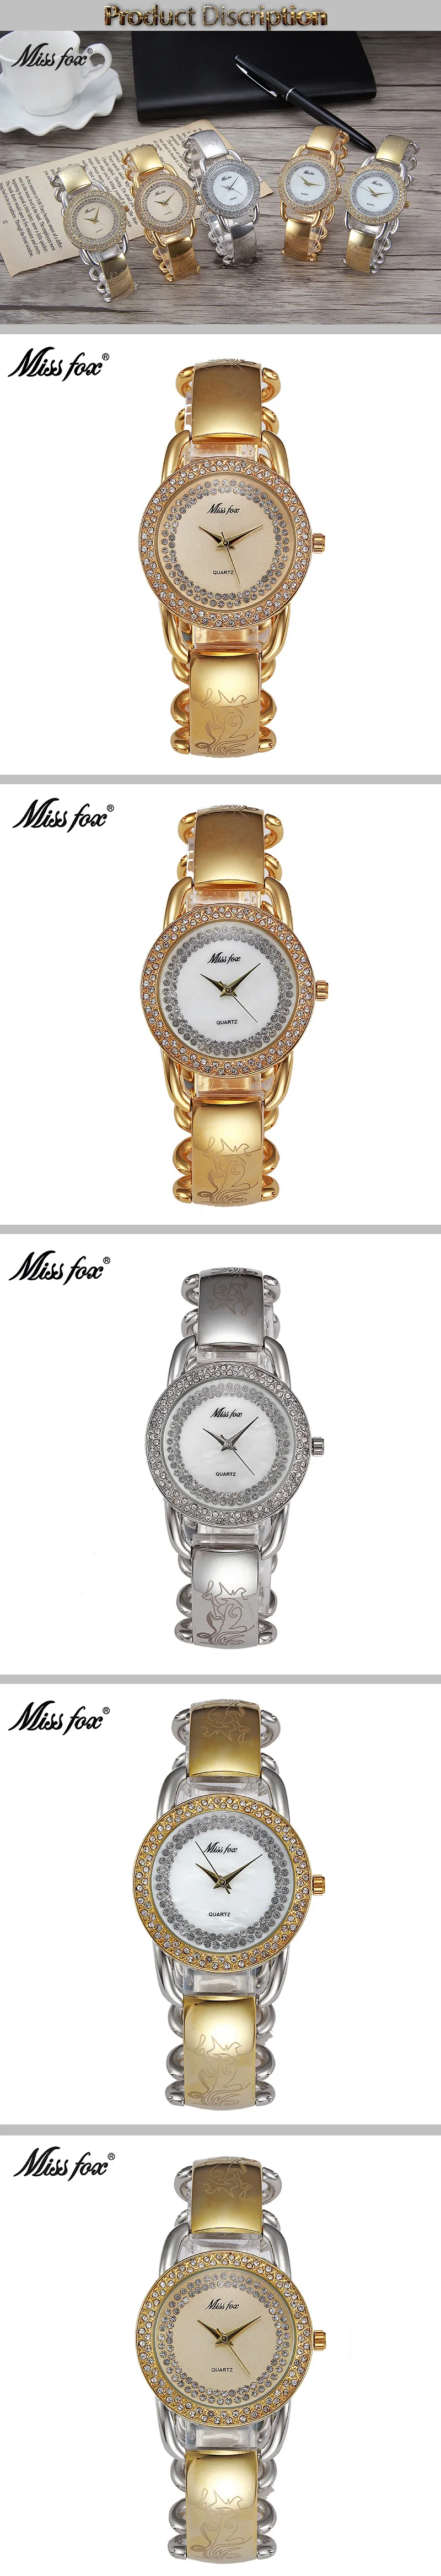 Miss Fox Для женщин Часы кварц Японии движения золотые модный бренд металлические часы Браслеты цепи фантастические женские BU Relogio feminino